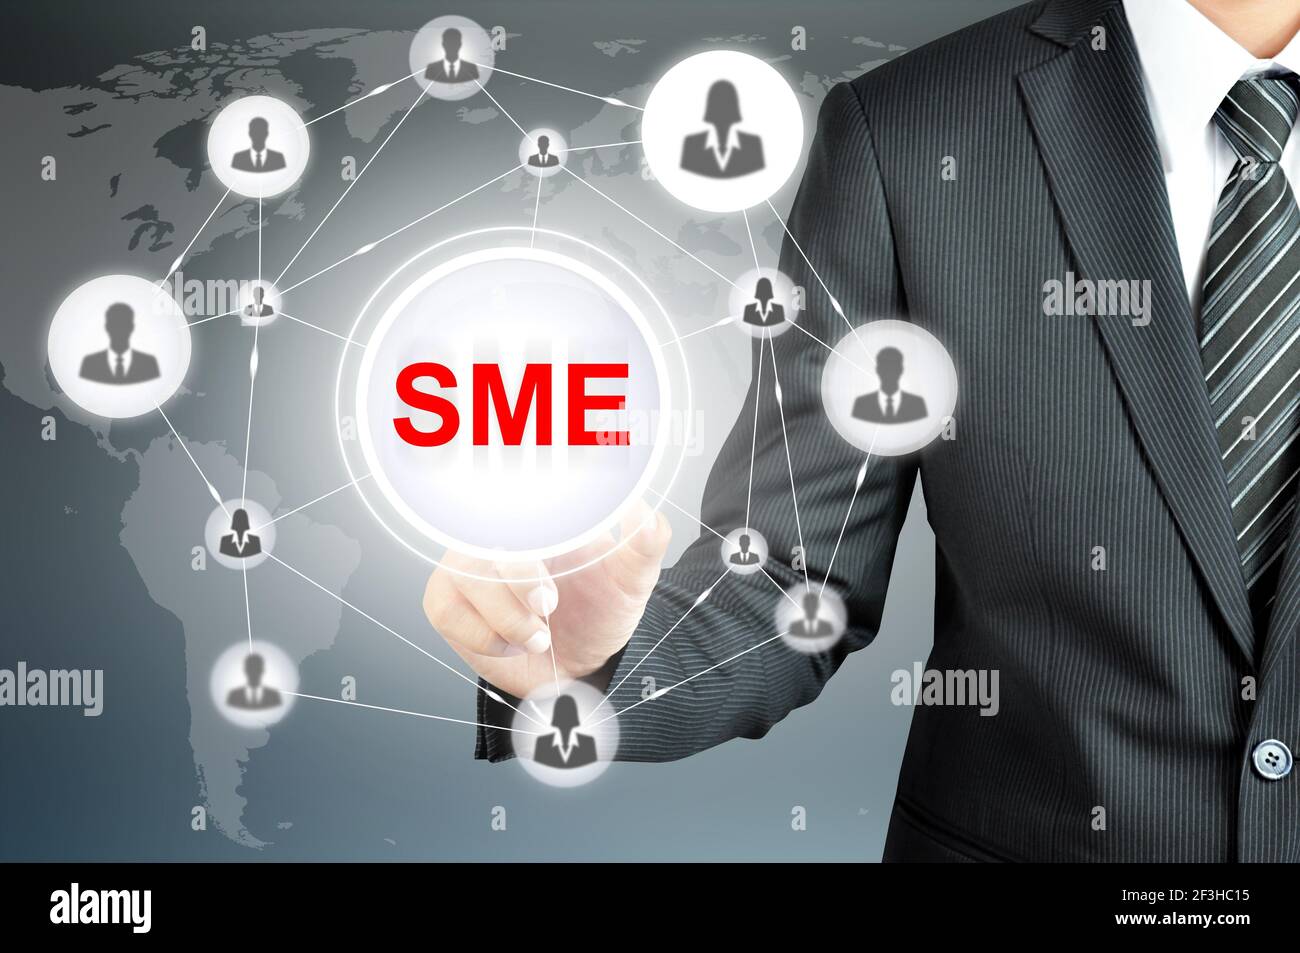 Homme d'affaires faisant référence aux PME (petites et moyennes entreprises) connectez-vous à l'écran virtuel avec les icônes de personnes liées au réseau Banque D'Images